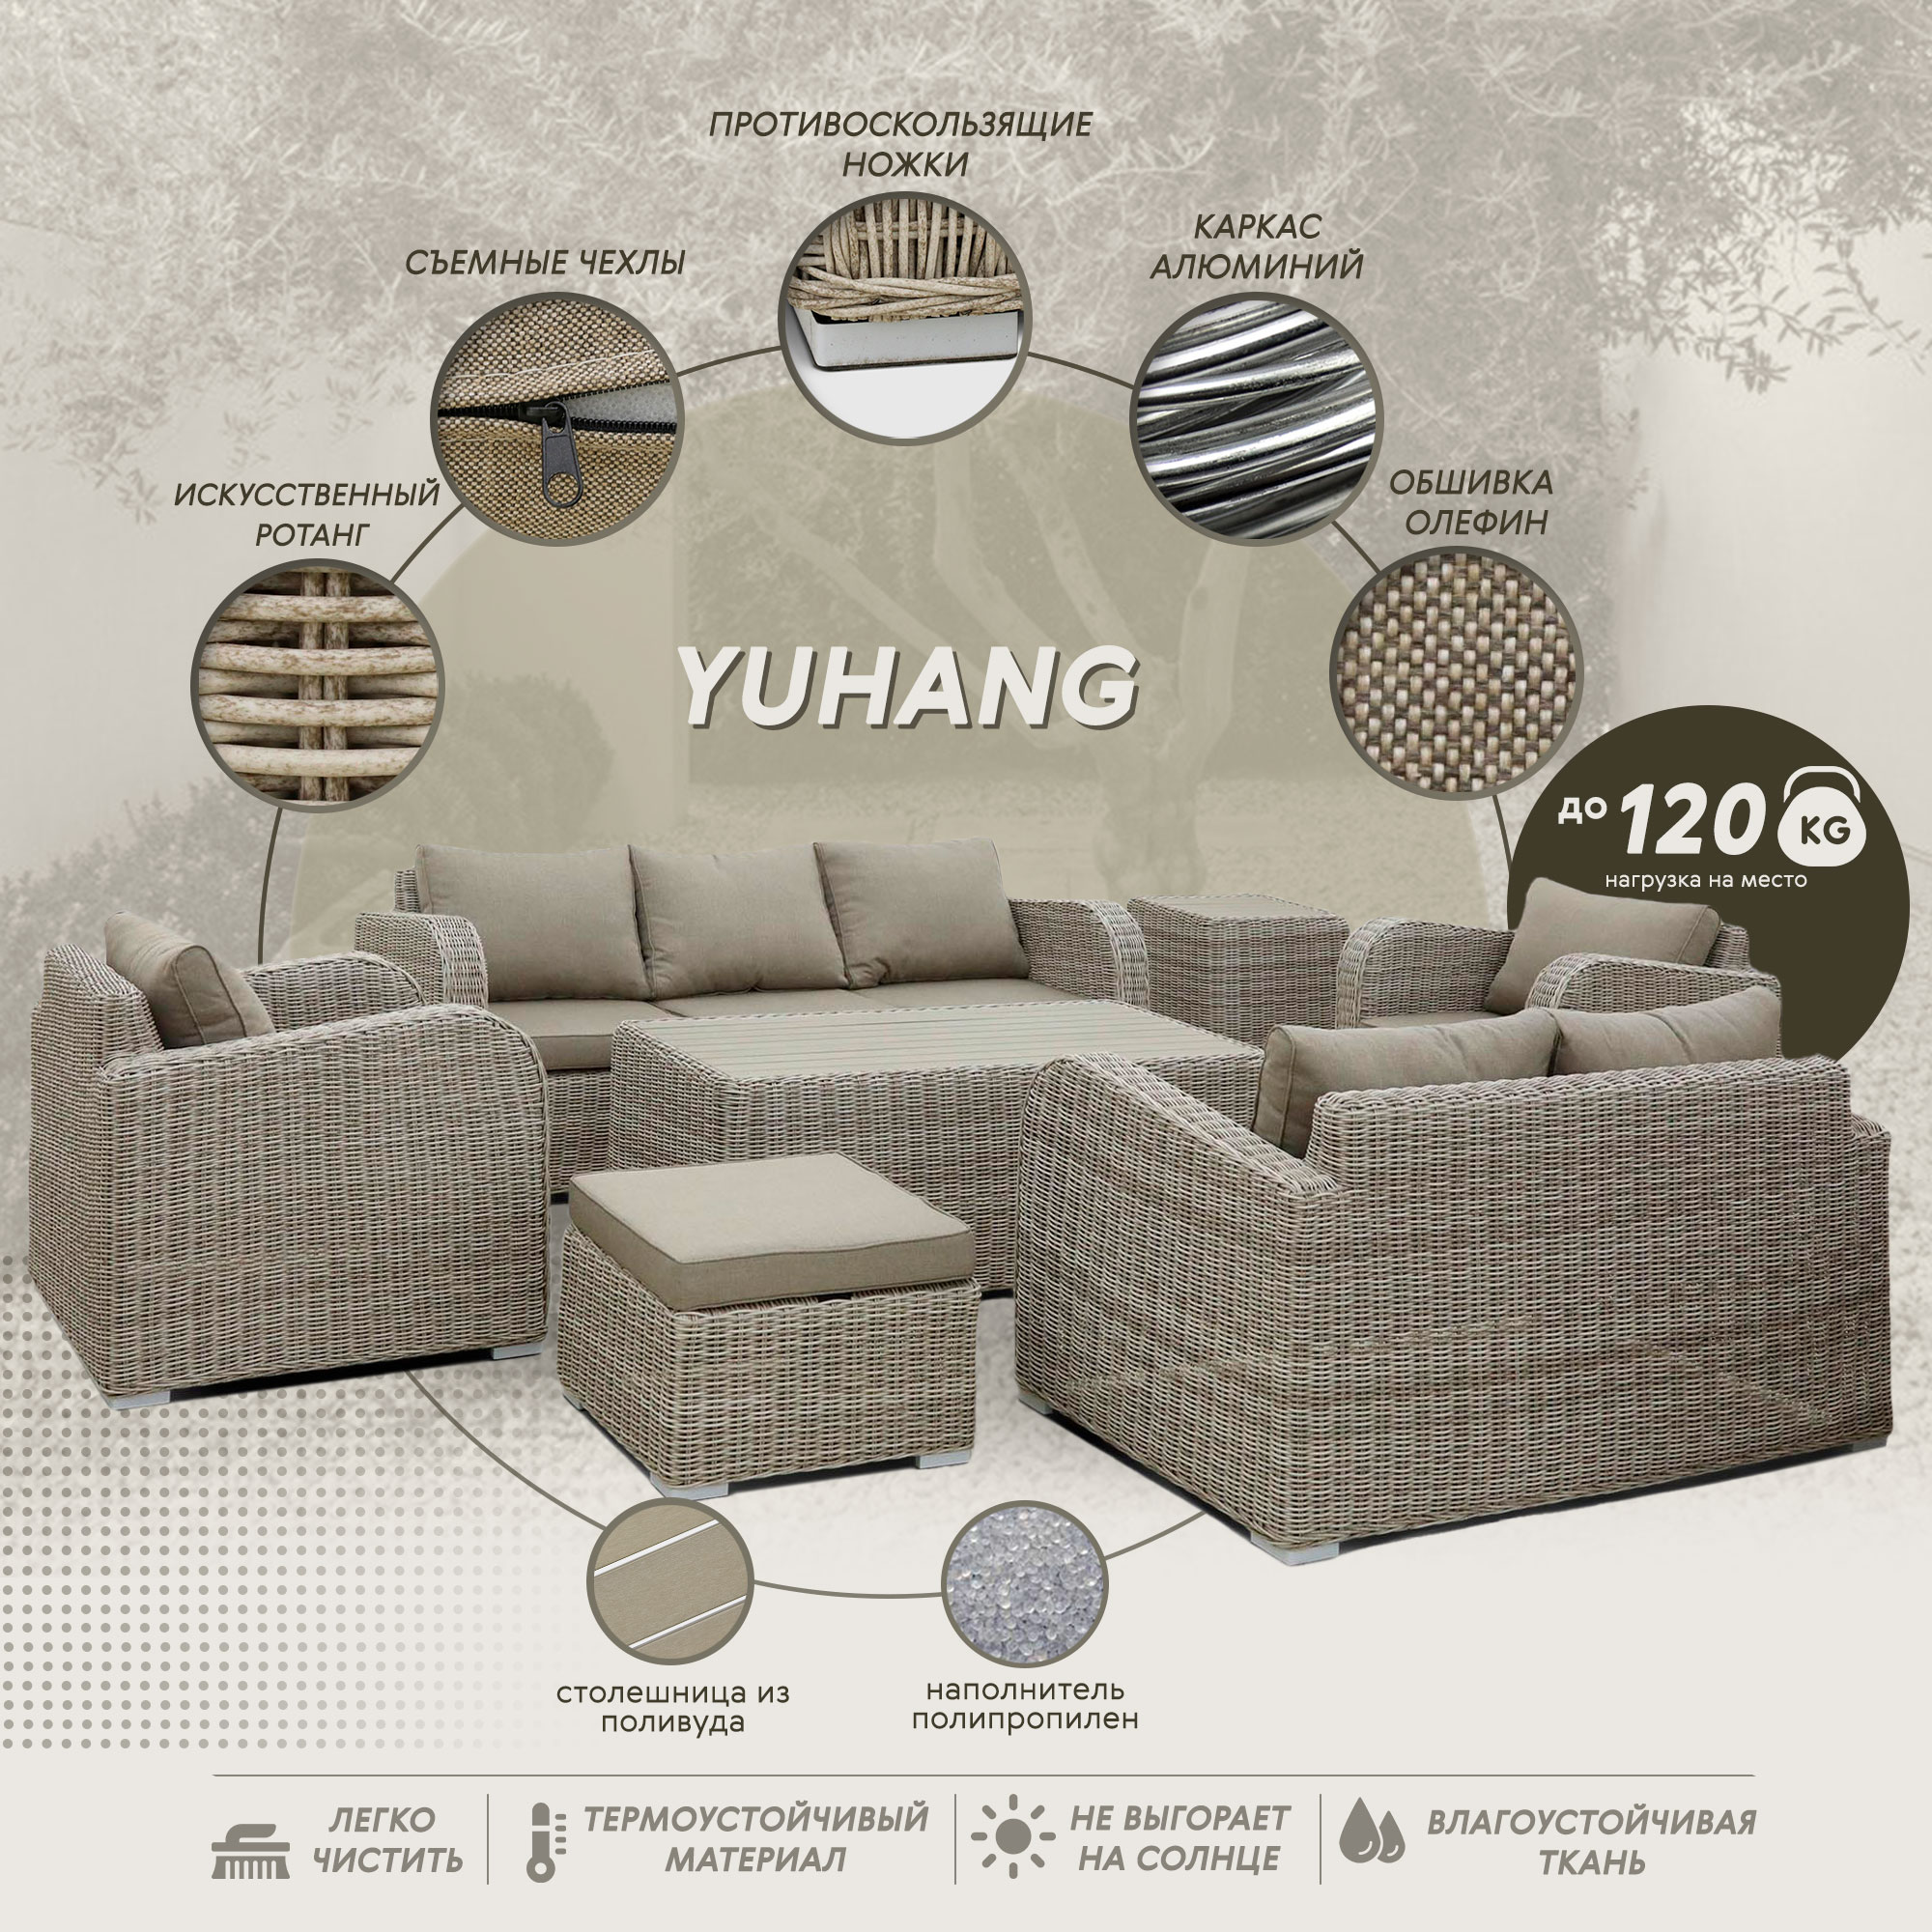 фото Комплект мебели yuhang бежево-коричневый 7 предметов